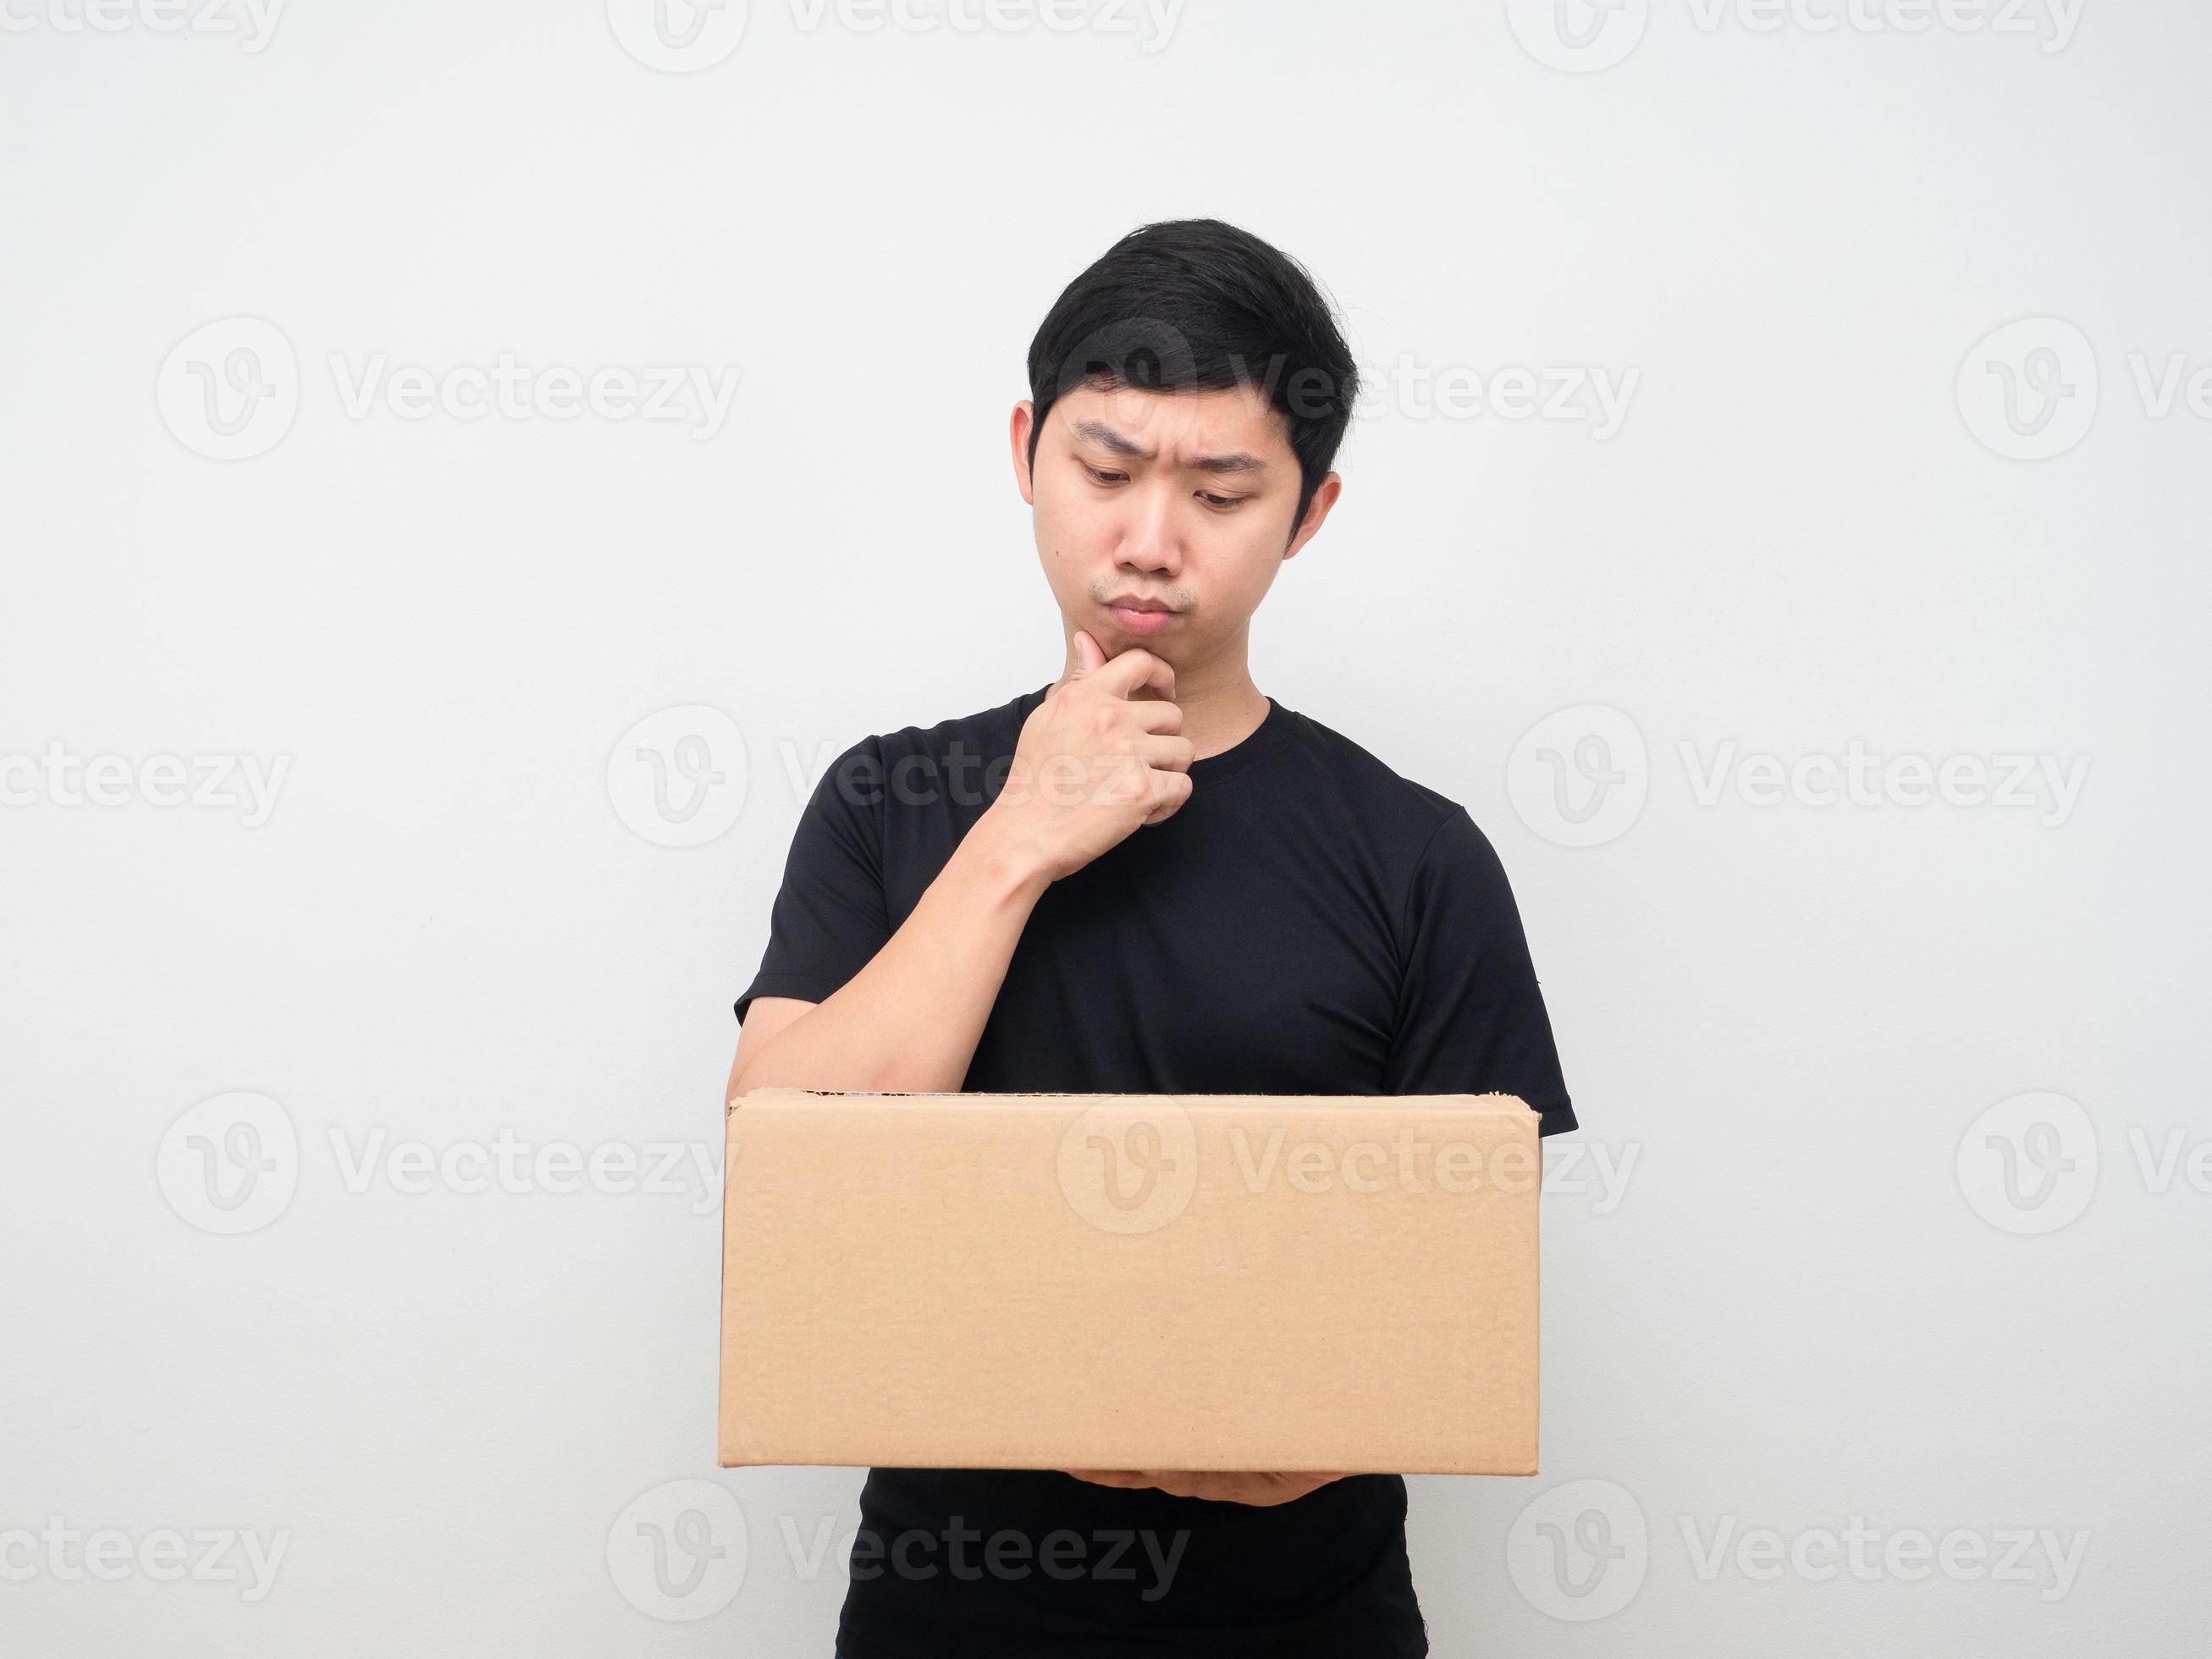 mann, der einkaufsbox in seiner hand betrachtet und über etwas nachdenkt  16685806 Stock-Photo bei Vecteezy